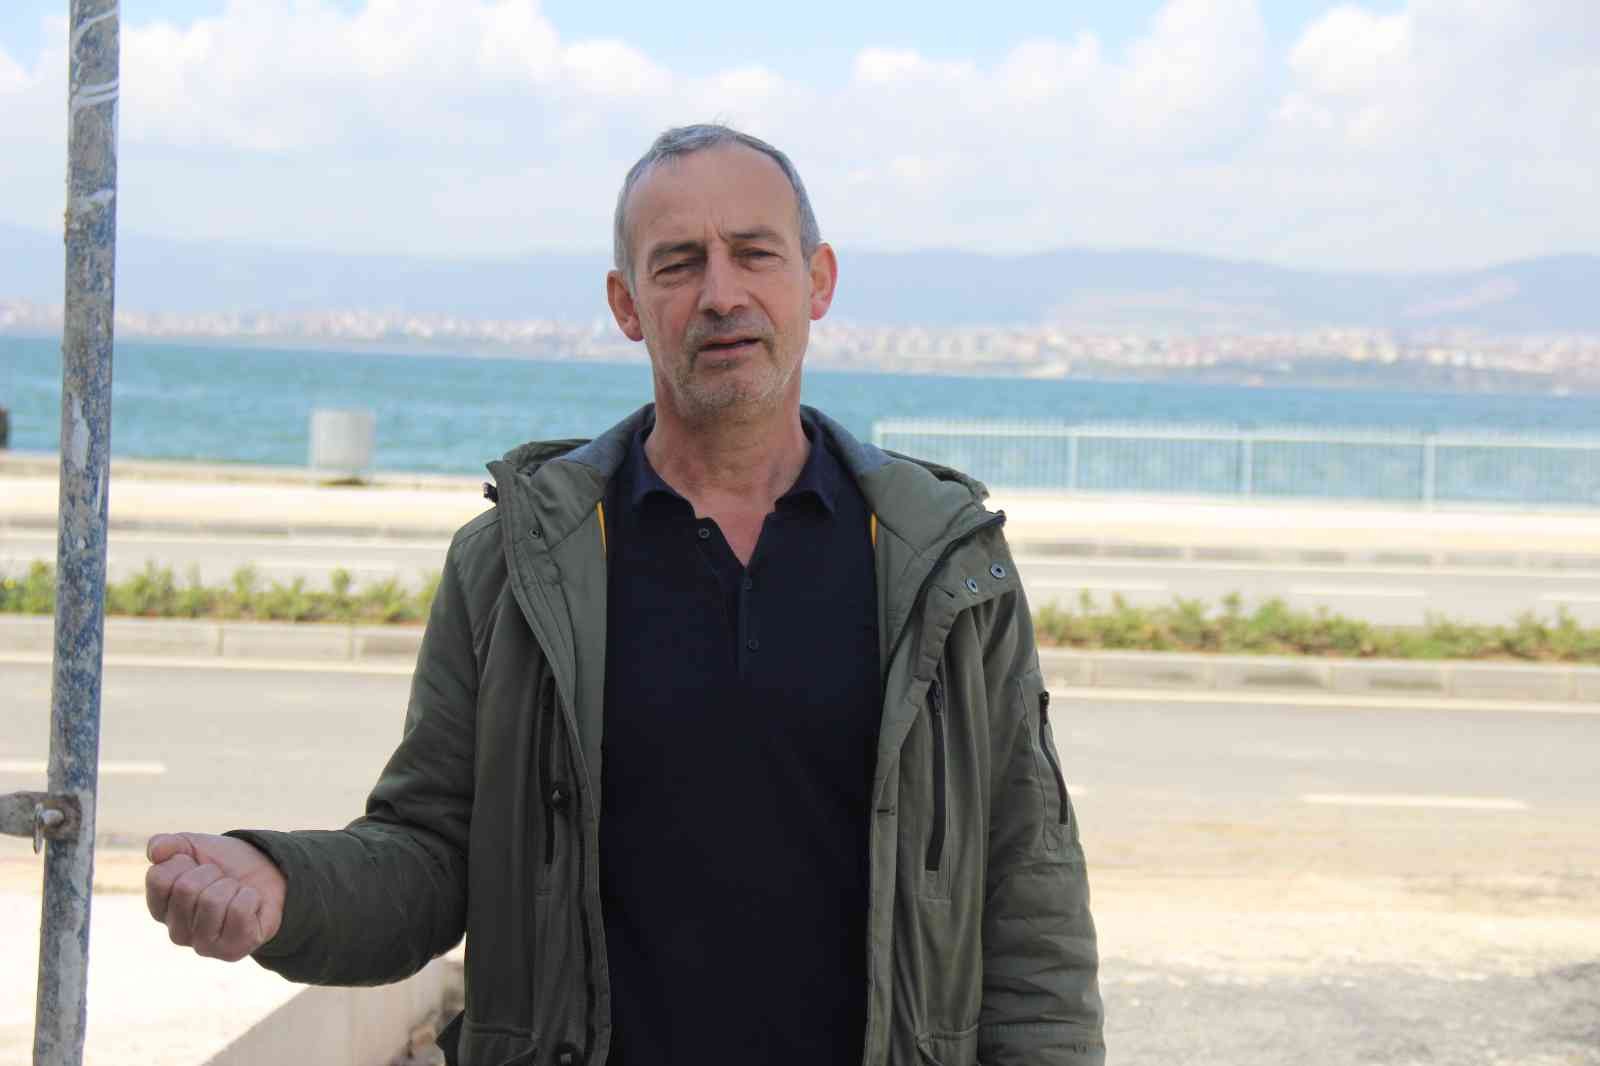 Kocaeli’de tesisine doğalgaz bağlatmak isteyen Bülent Diker isimli vatandaş kendisine gönderilen teklif ile şok oldu. Palmet Grup tarafından ...